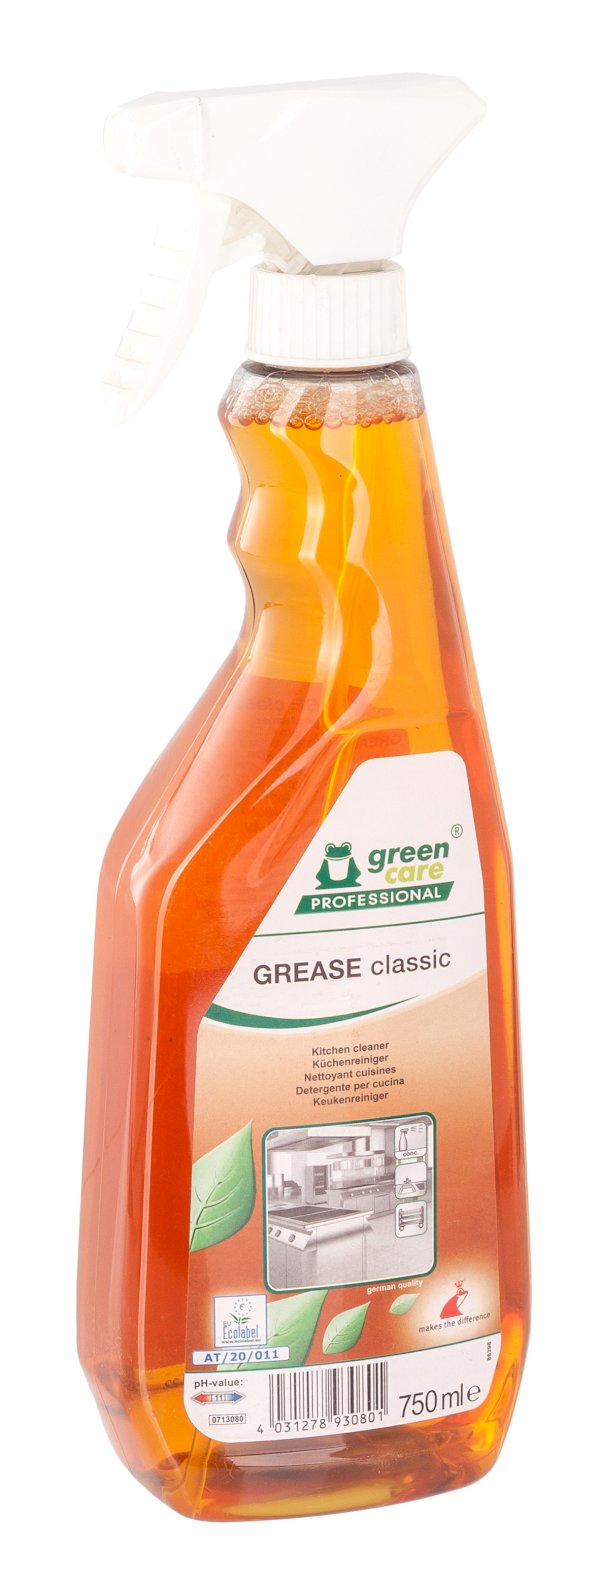 Эко средство для удаления жира на кухне green care PROFESSIONAL (Tana) Grease classic, 750 мл, в коробке 10 штук 